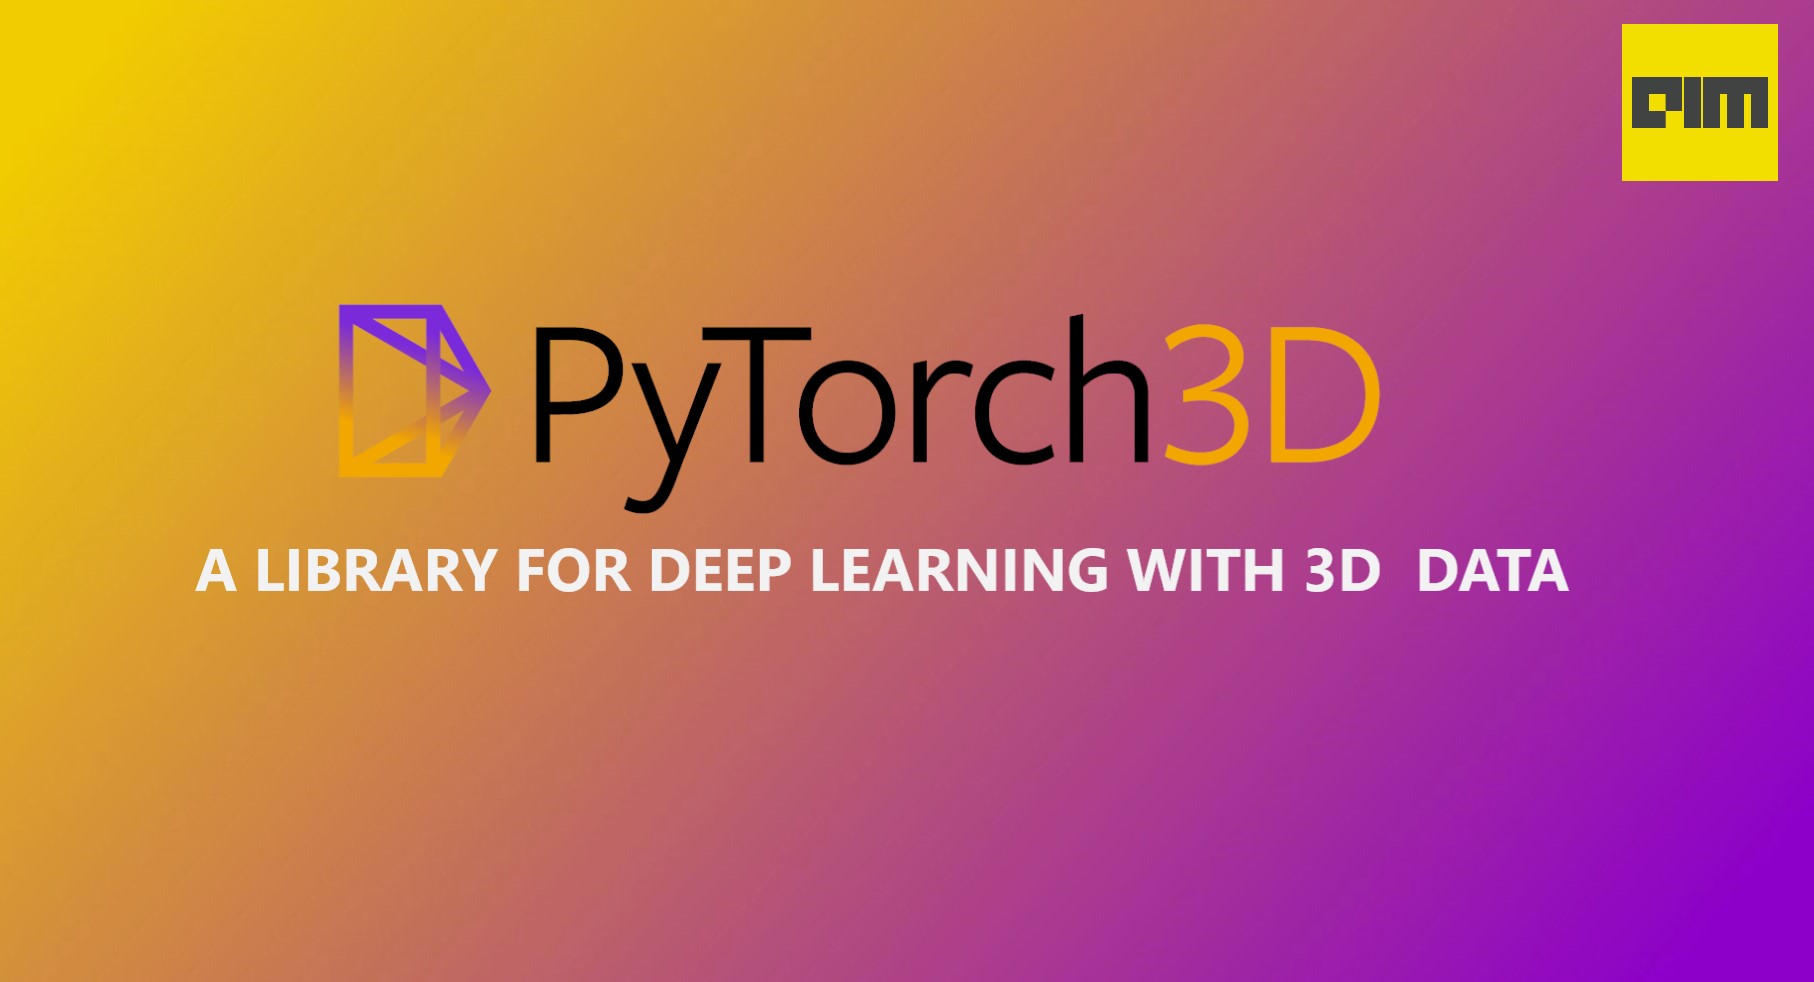 PyTorch 3D